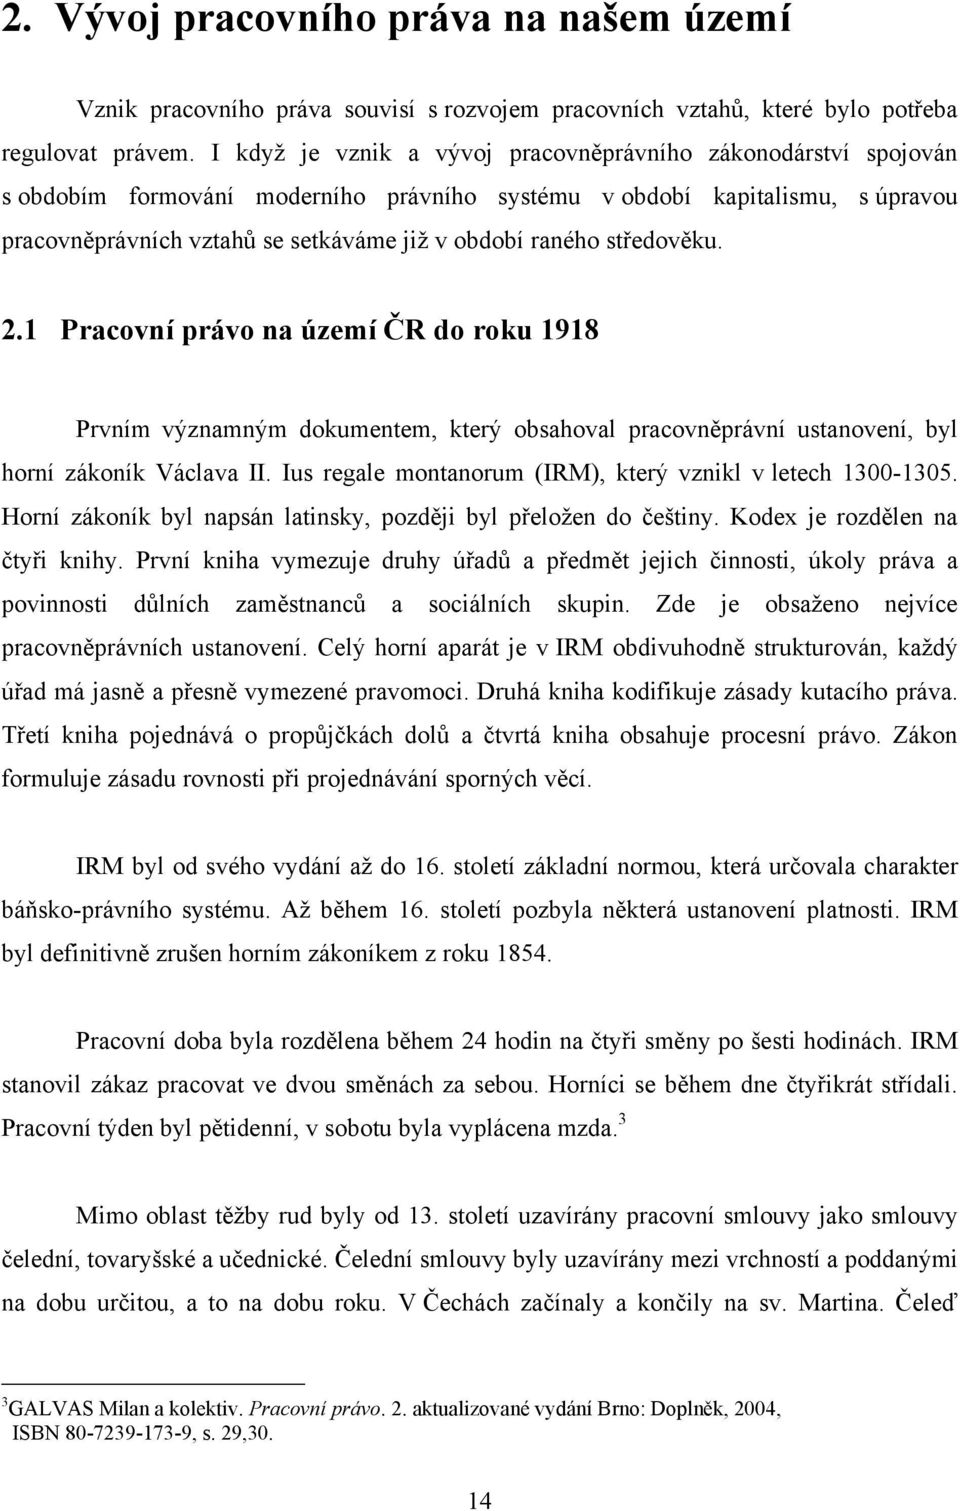 středověku. 2.1 Pracovní právo na území ČR do roku 1918 Prvním významným dokumentem, který obsahoval pracovněprávní ustanovení, byl horní zákoník Václava II.